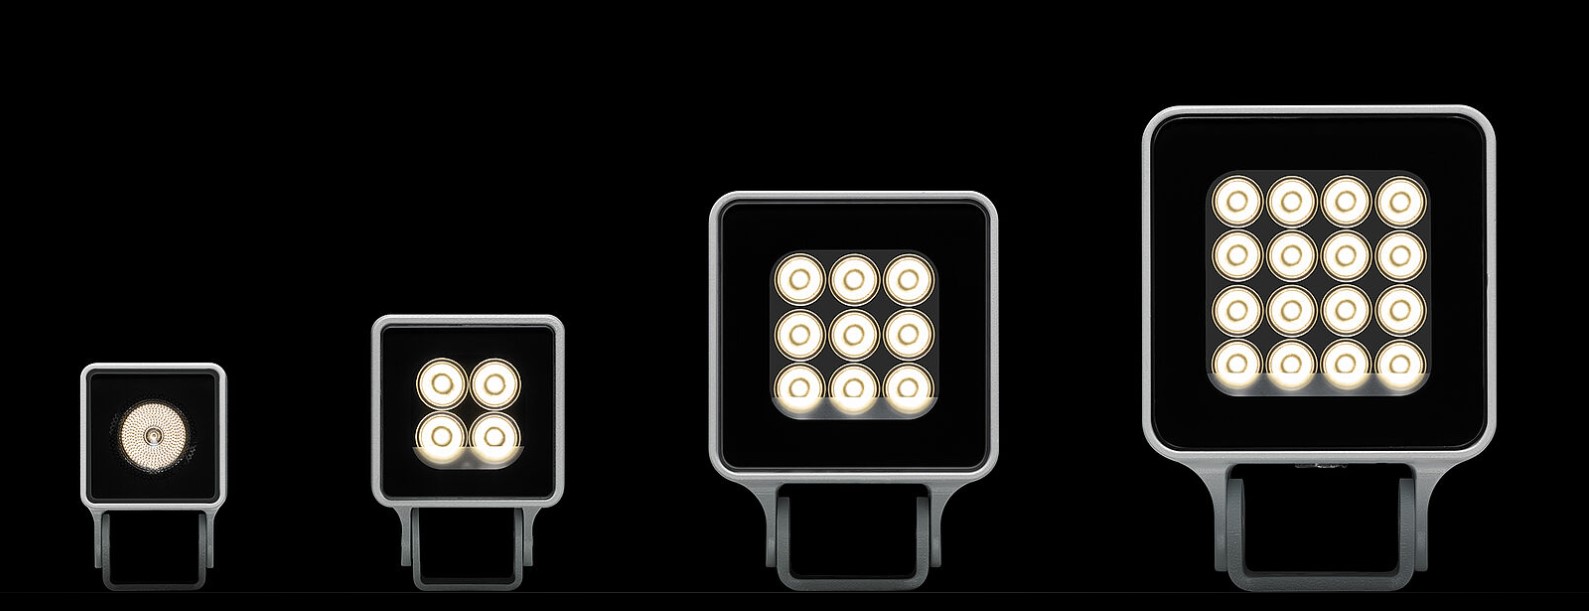 Keravajoen monitoimitalossa tyylikäs julkisivuvalaistus - Meyer Lighting:lta uusia valaisimia